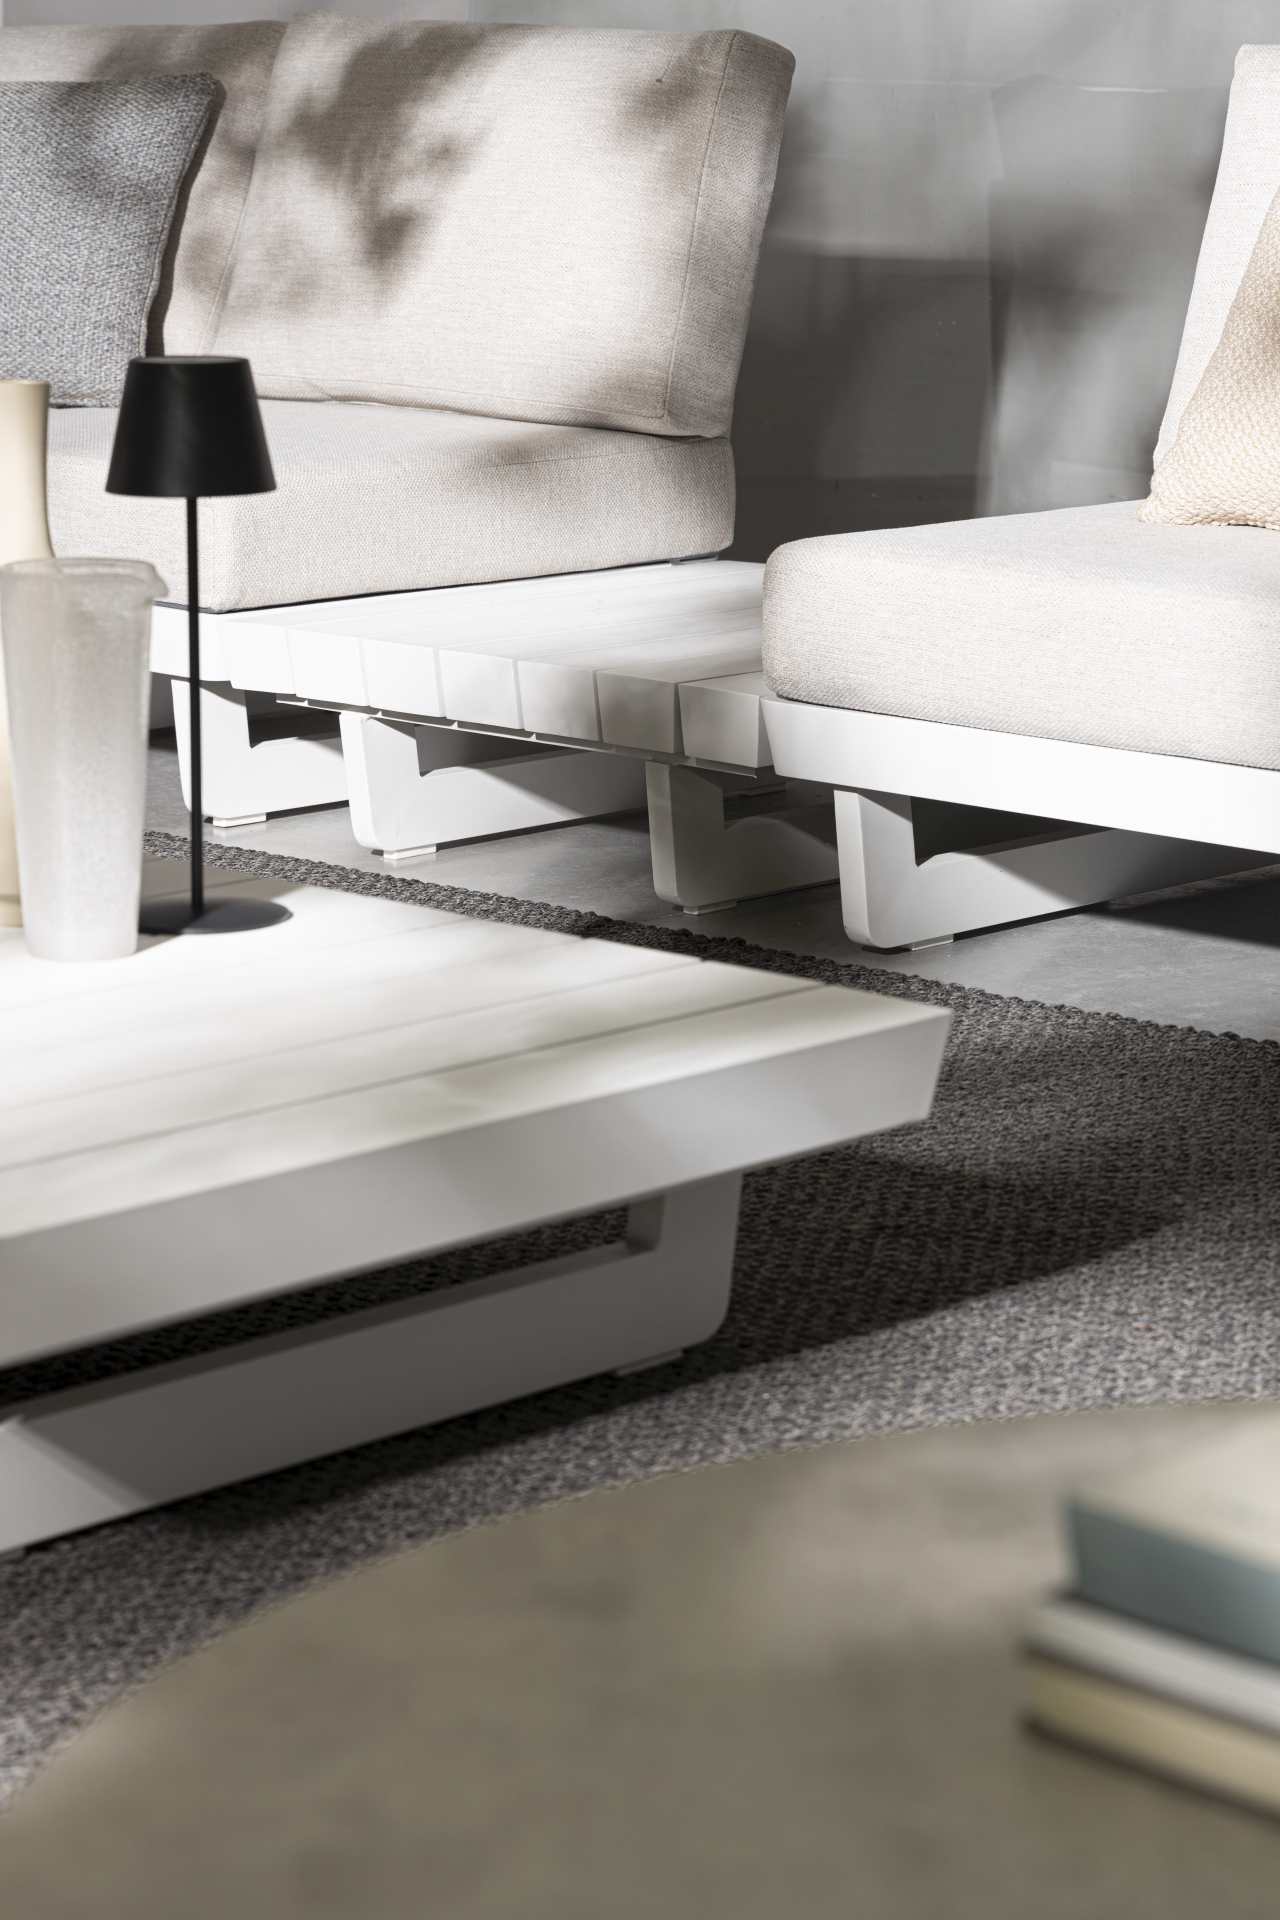 Das Gartensofa Infinity überzeugt mit seinem modernen Design. Gefertigt wurde es aus Olefin-Stoff, welcher einen grauen Farbton besitzt. Das Gestell ist aus Aluminium und hat eine weiße Farbe. Das Sofa verfügt über eine Sitzhöhe von 38 cm und ist für den 